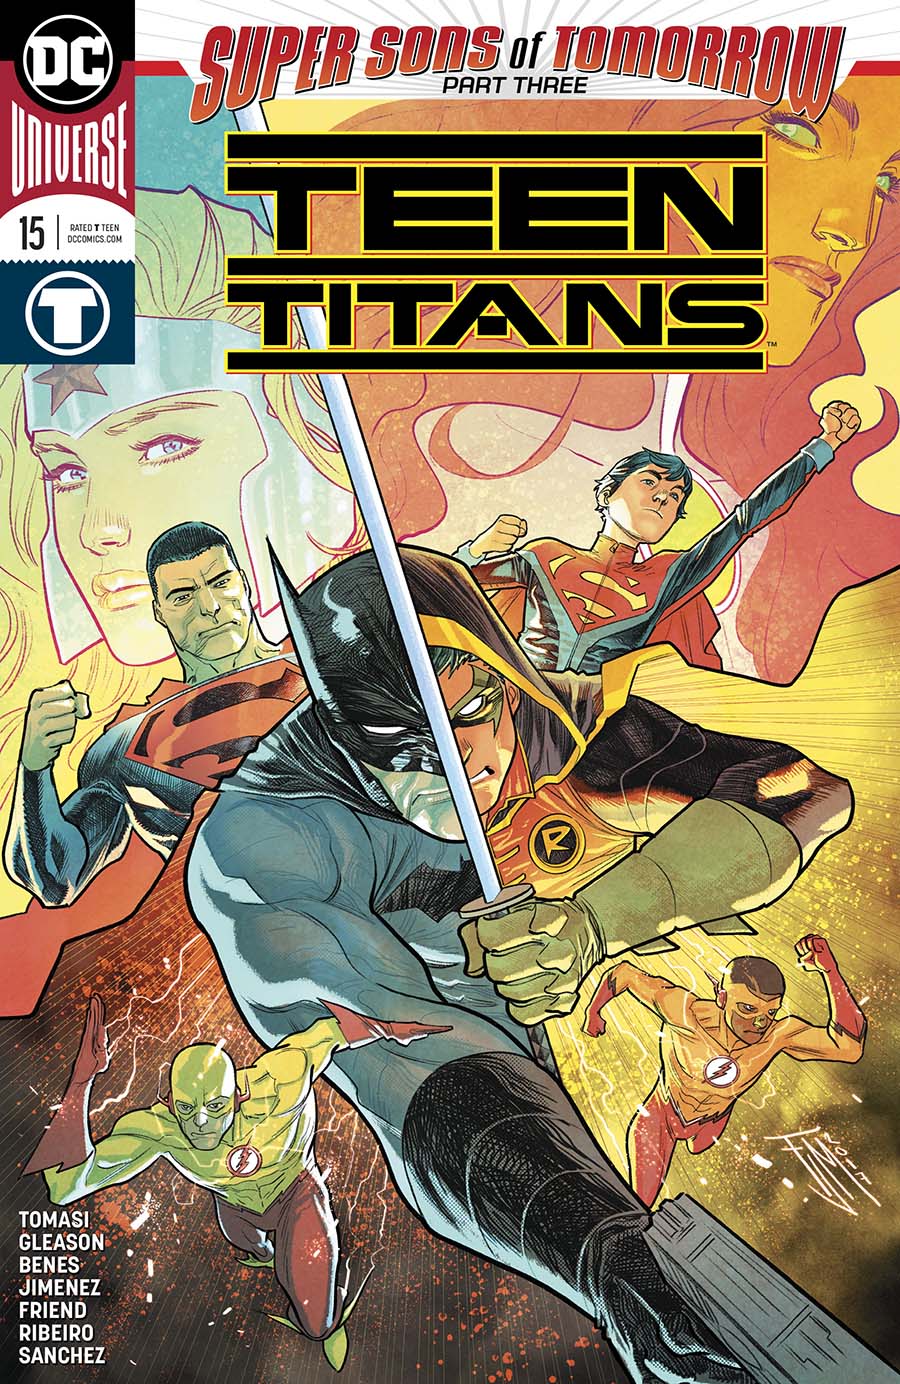 Teen Titans Vol 6 #15 Cover A Regular Francis Manapul Cover (Super Sons Of Tomorrow Part 3)